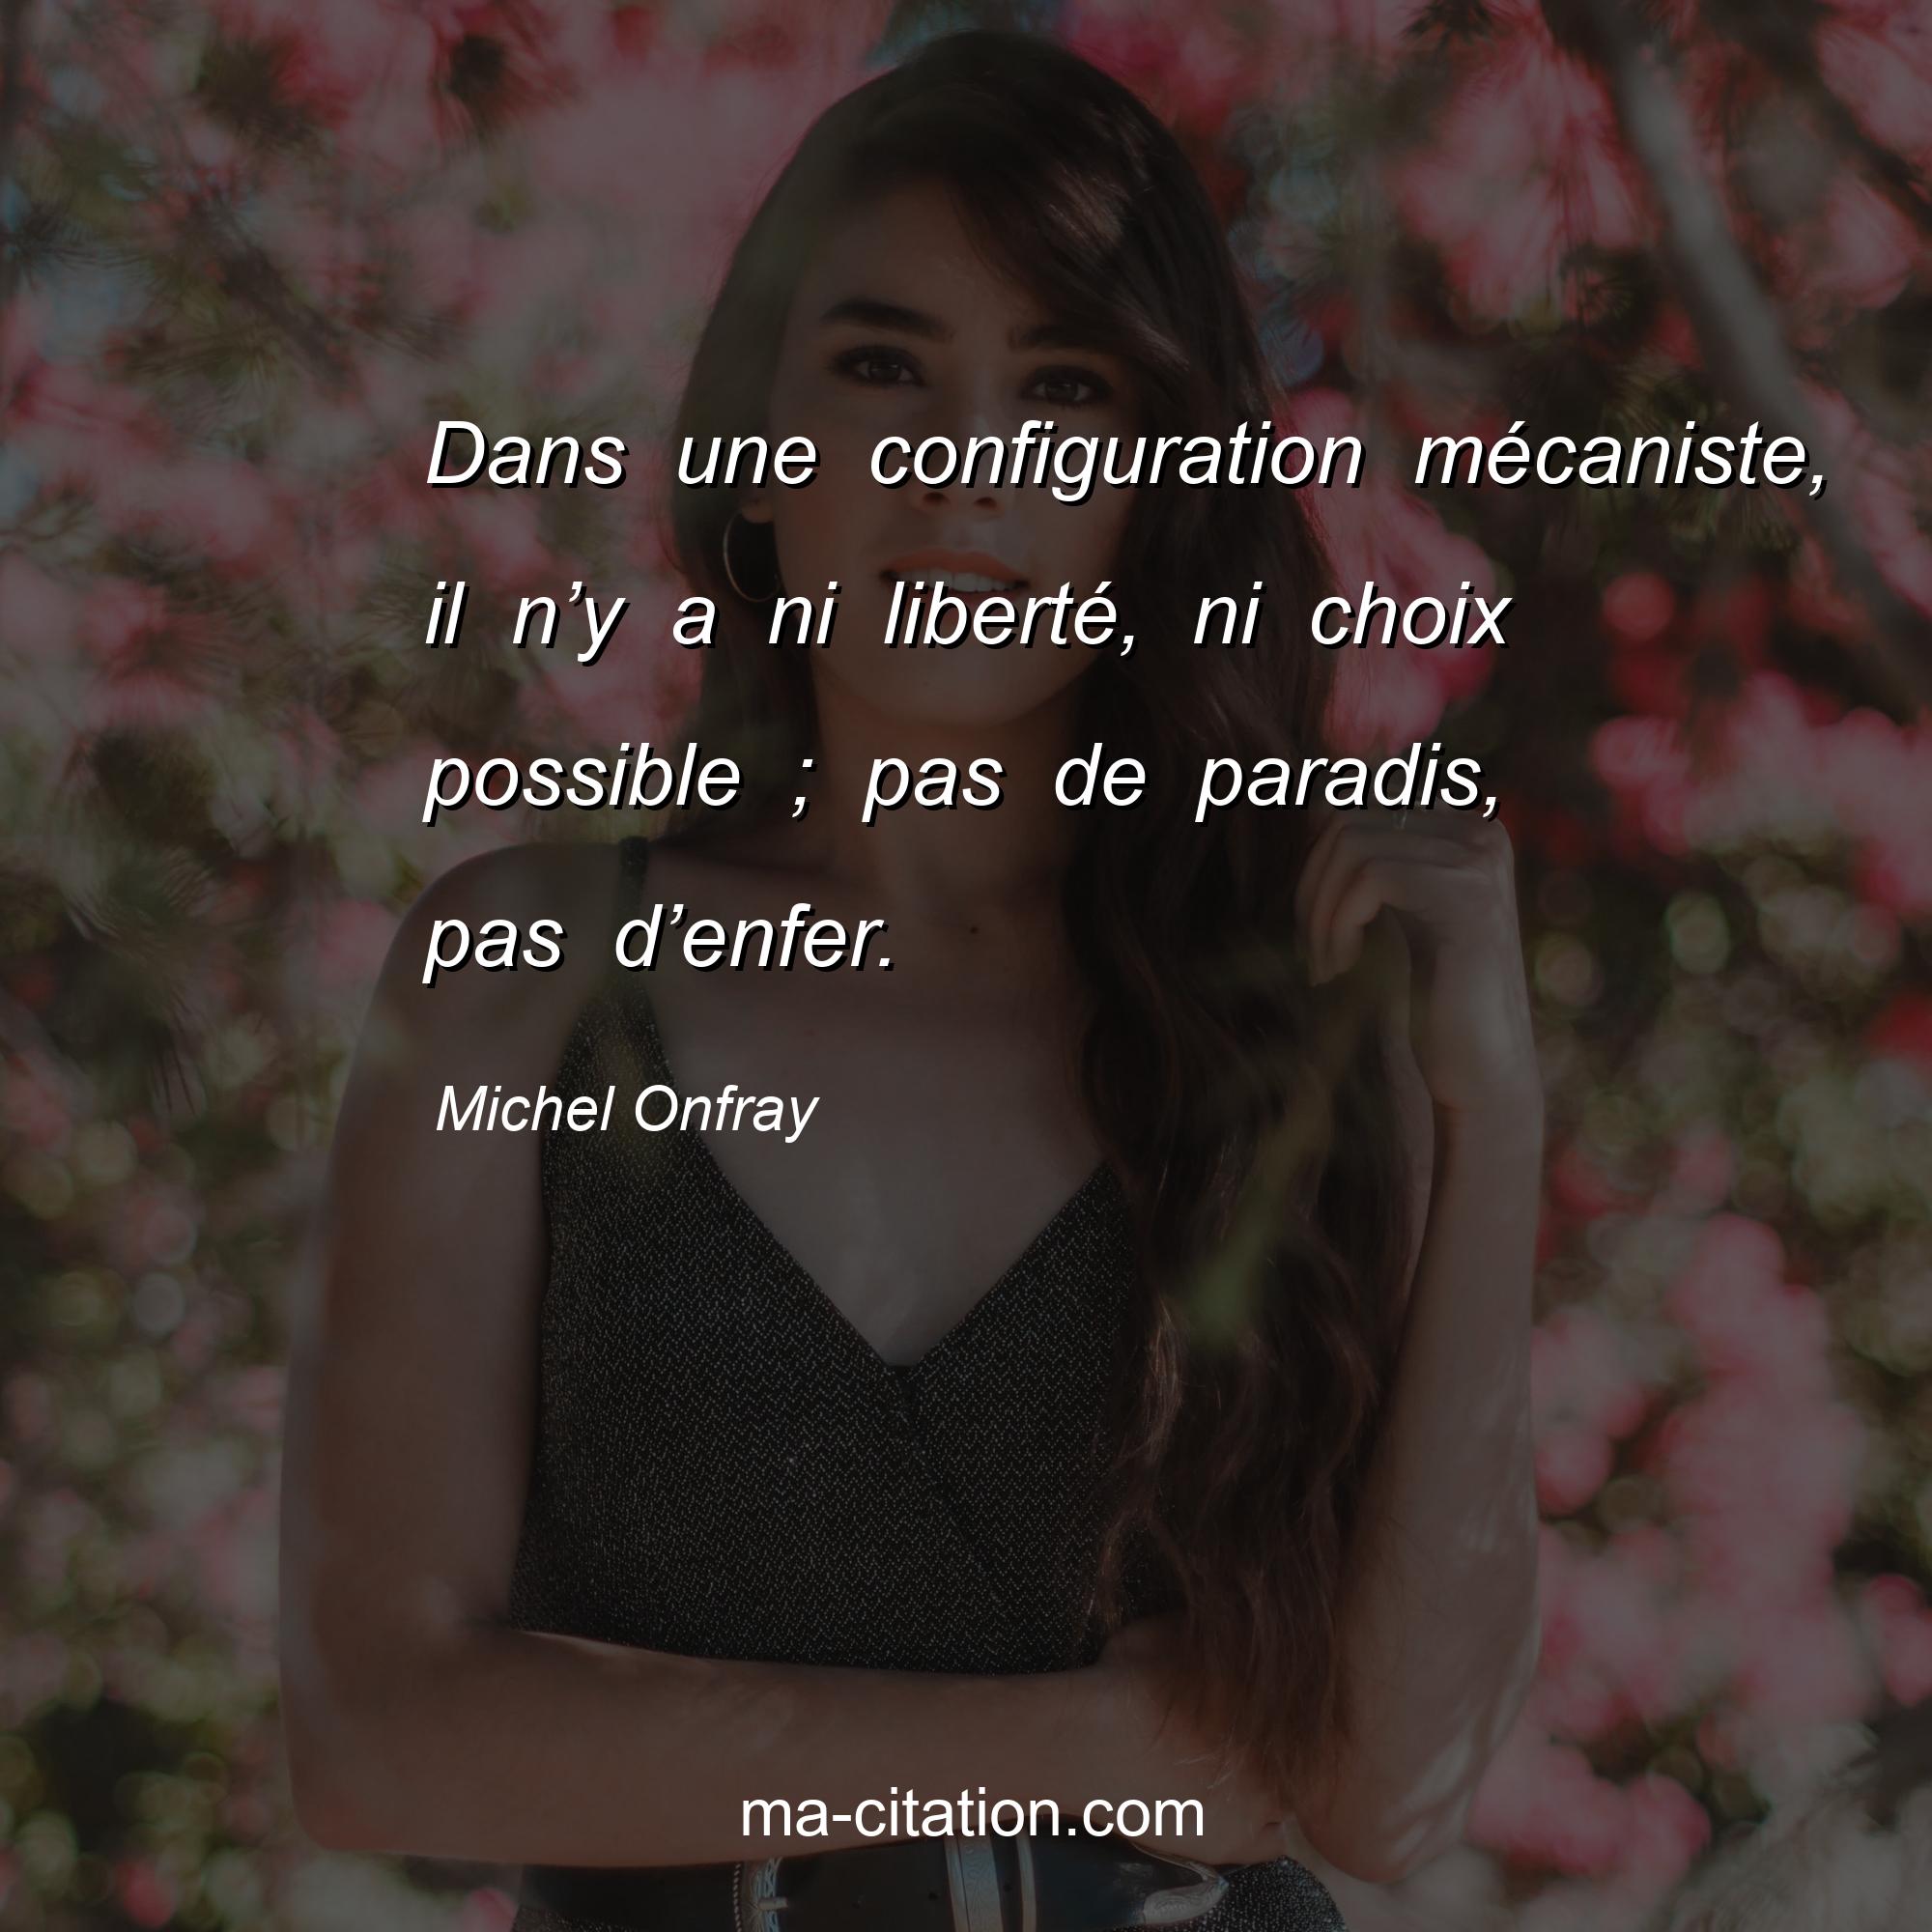 Michel Onfray : Dans une configuration mécaniste, il n’y a ni liberté, ni choix possible ; pas de paradis, pas d’enfer.